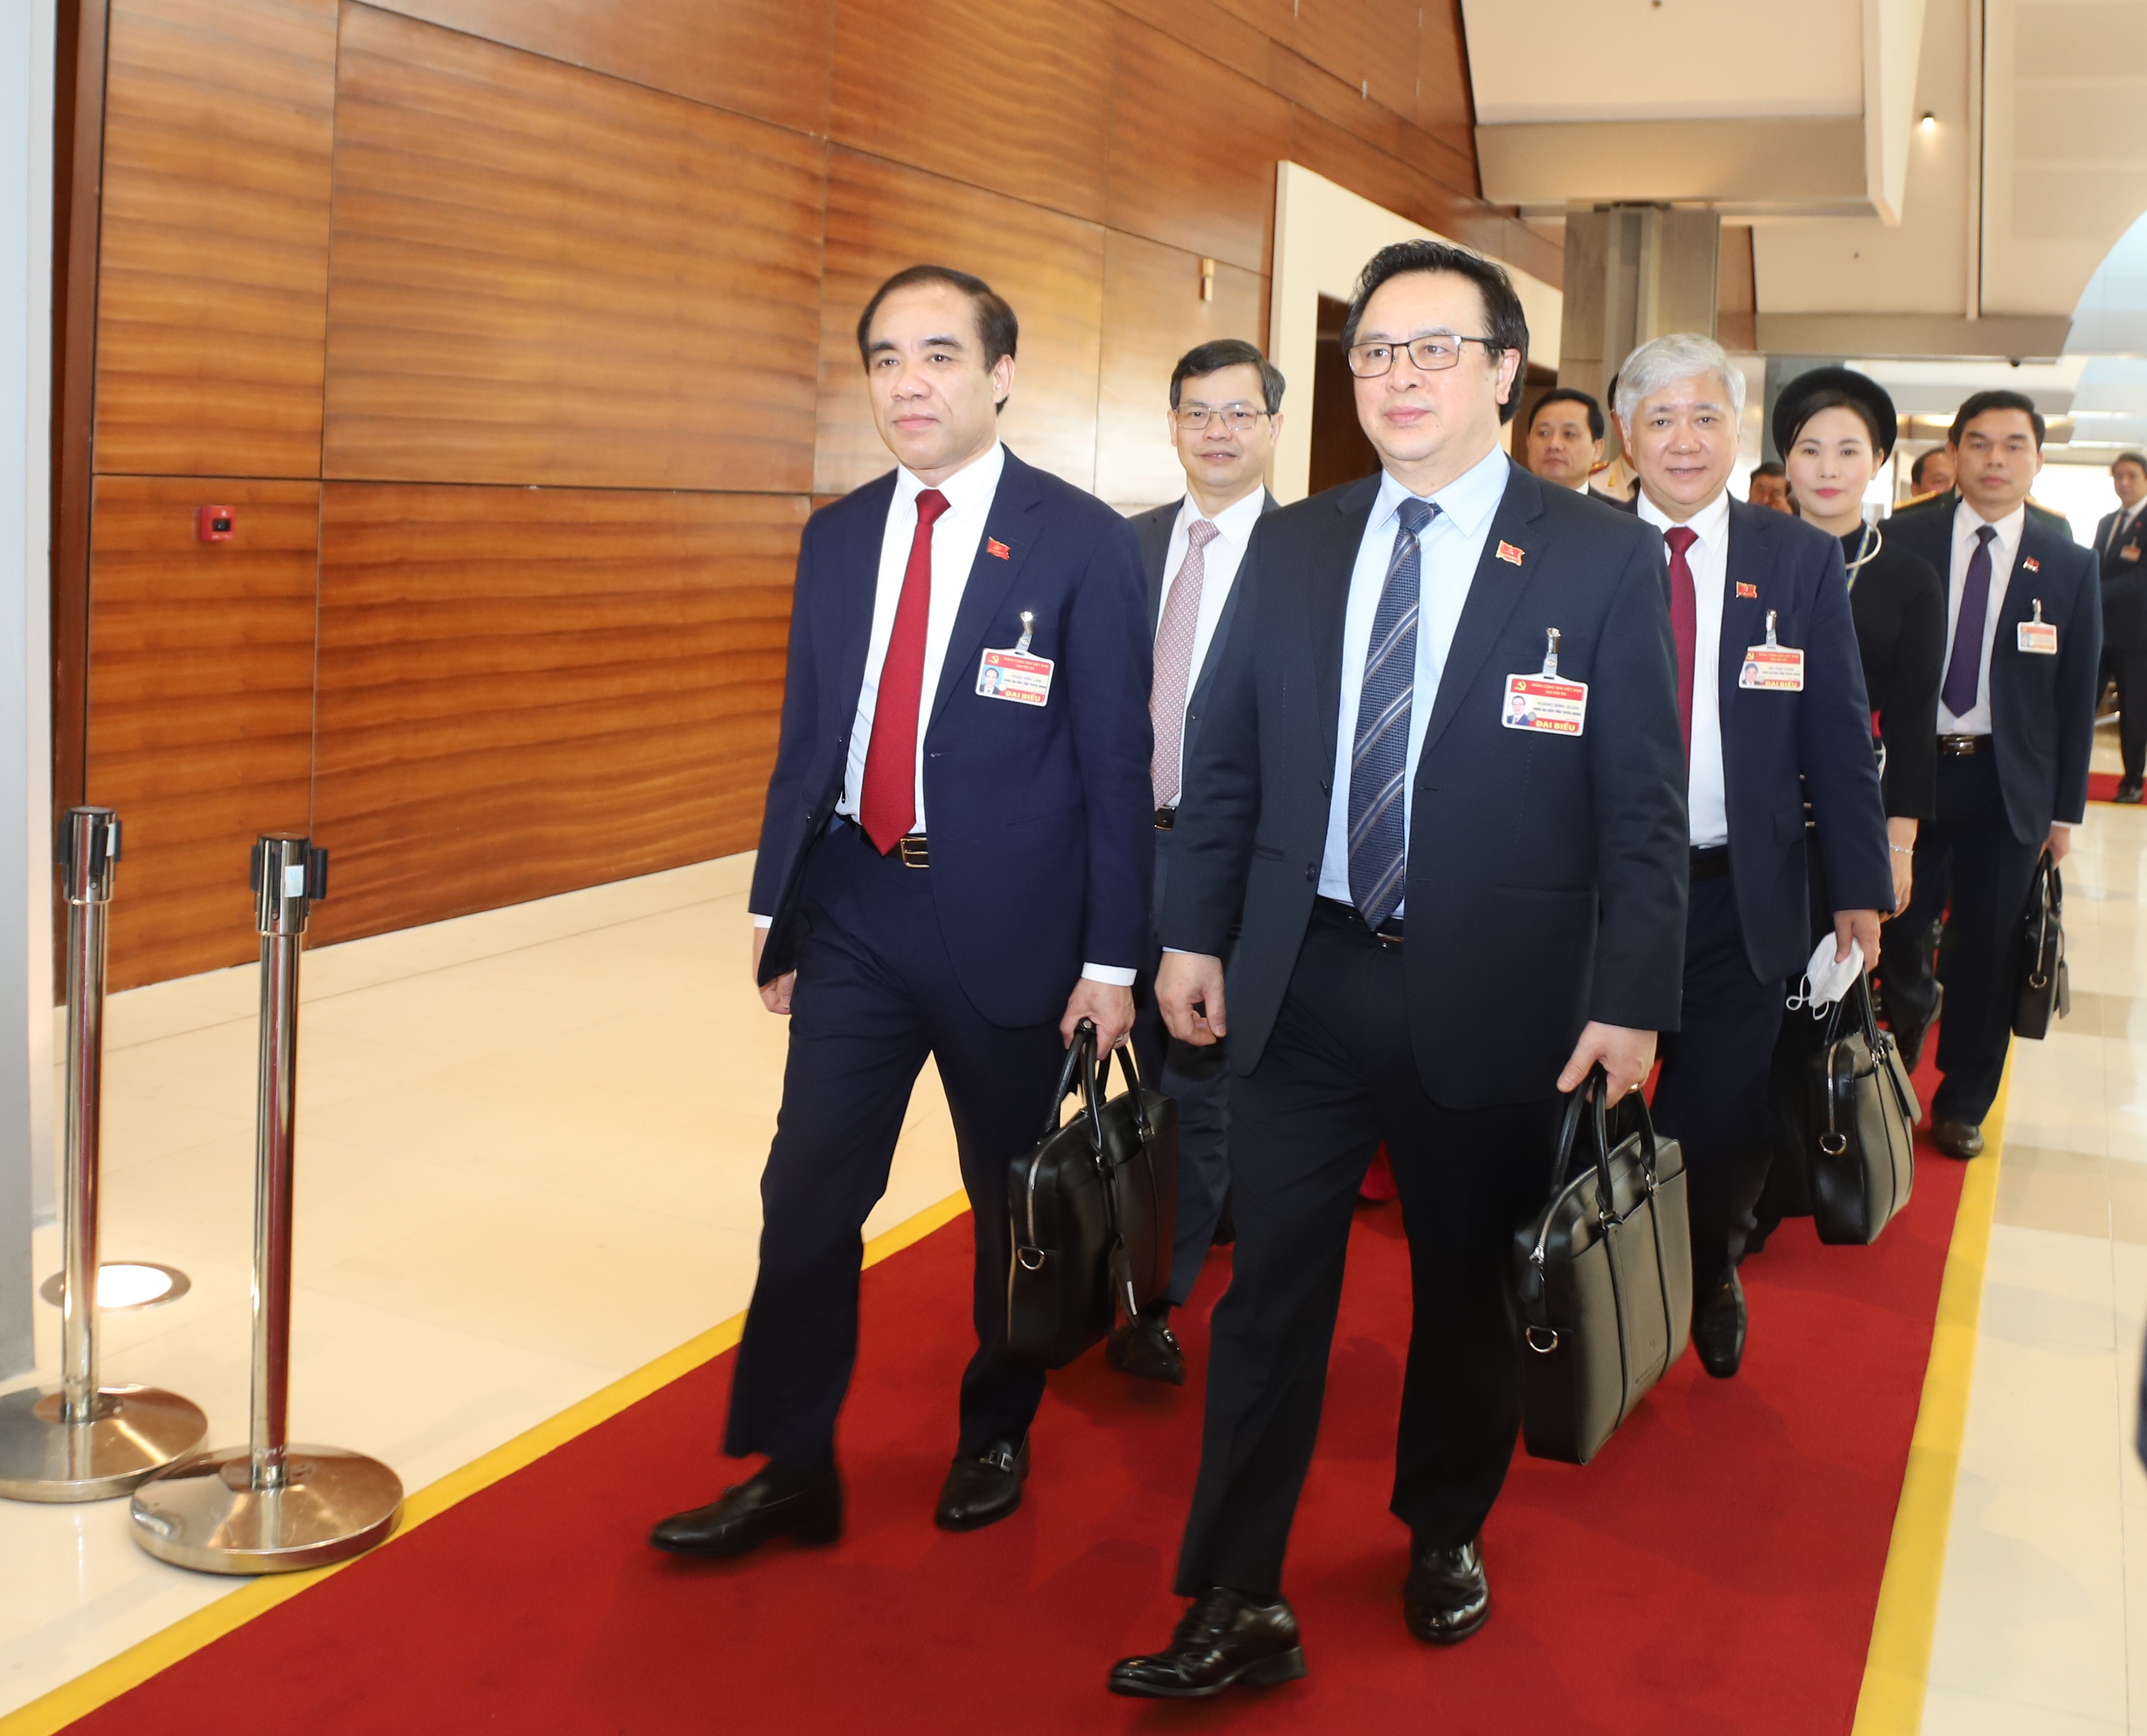 Đoàn đại biểu tỉnh Tuyên Quang dự bế mạc Đại hội đại biểu toàn quốc lần thứ XIII của Đảng sáng 1/2/2021